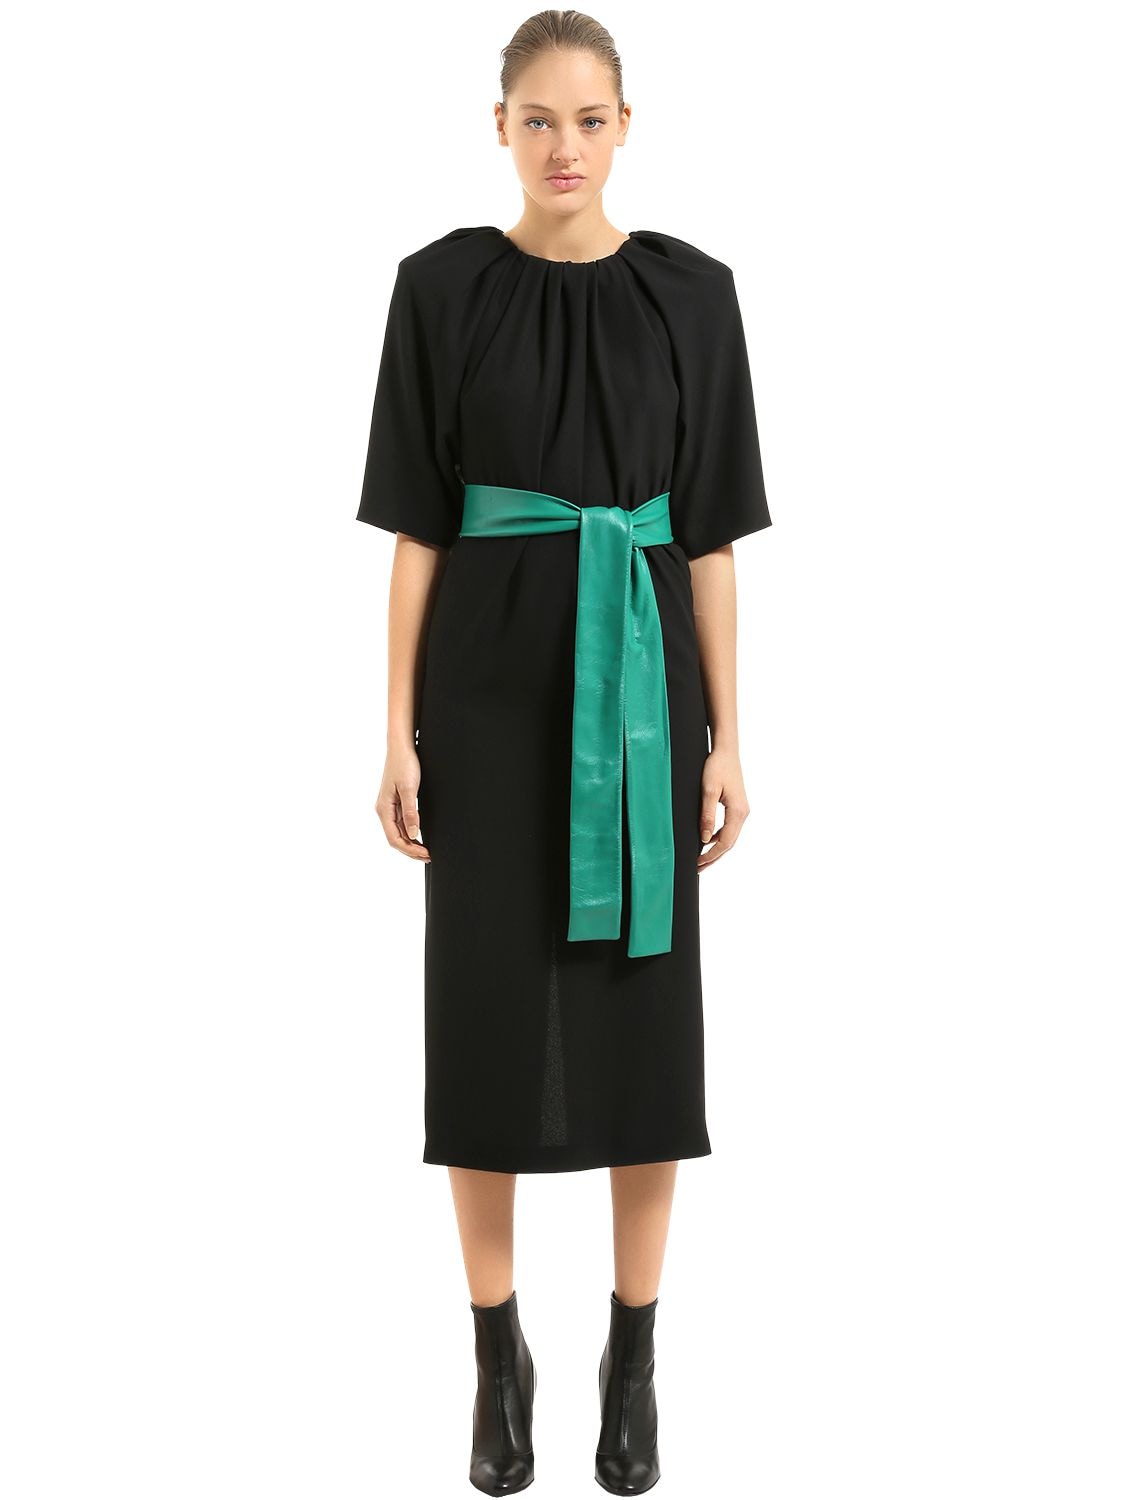 MAISON MARGIELA CADY DRESS WITH LEATHER BELT,67IM84002-OTAW0